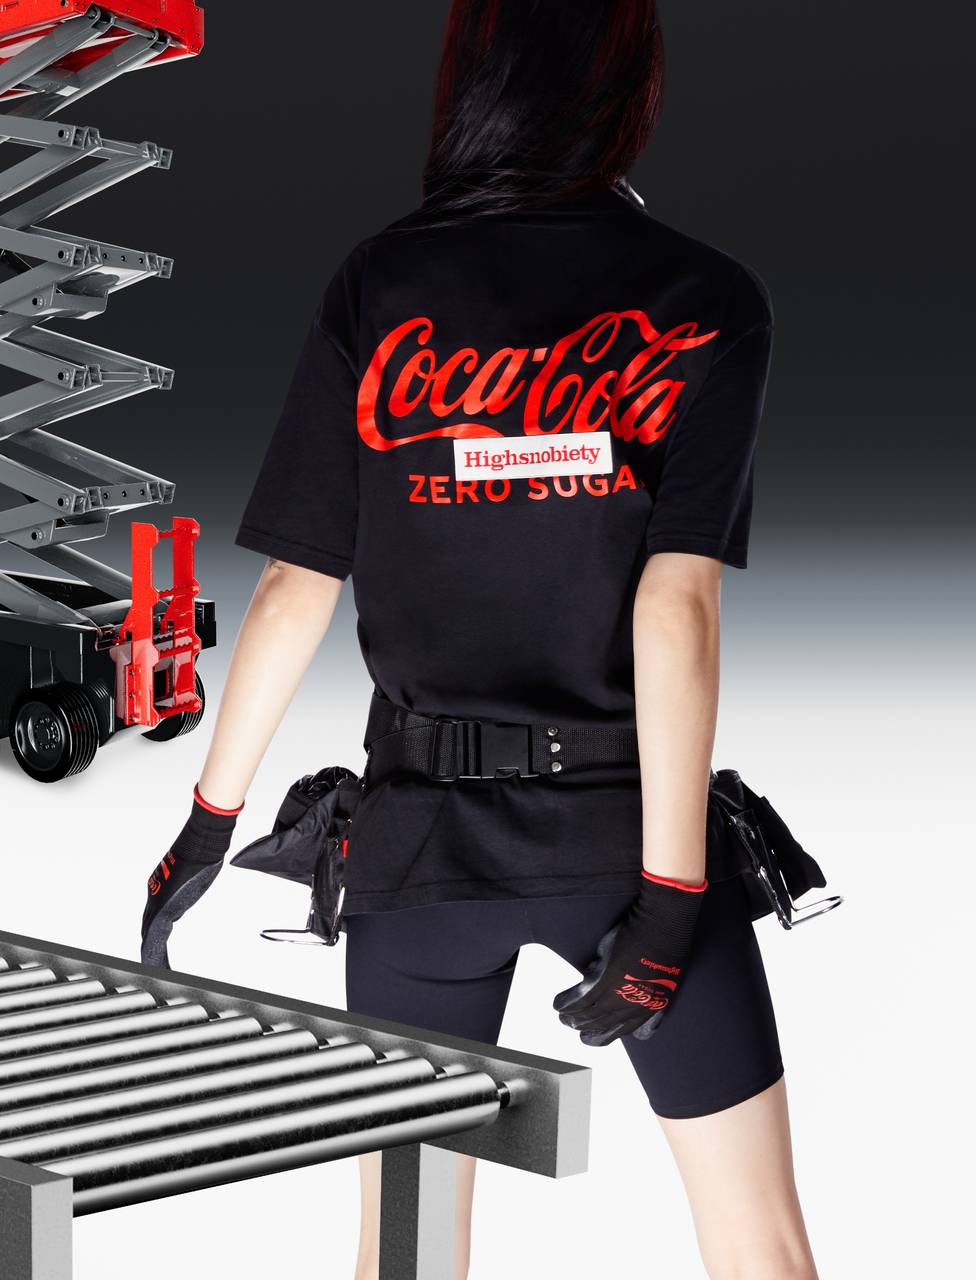 Marki Coca-Cola i Highsnobiety pokazały limitowaną kolekcję ubrań (Fot. materiały prasowe)